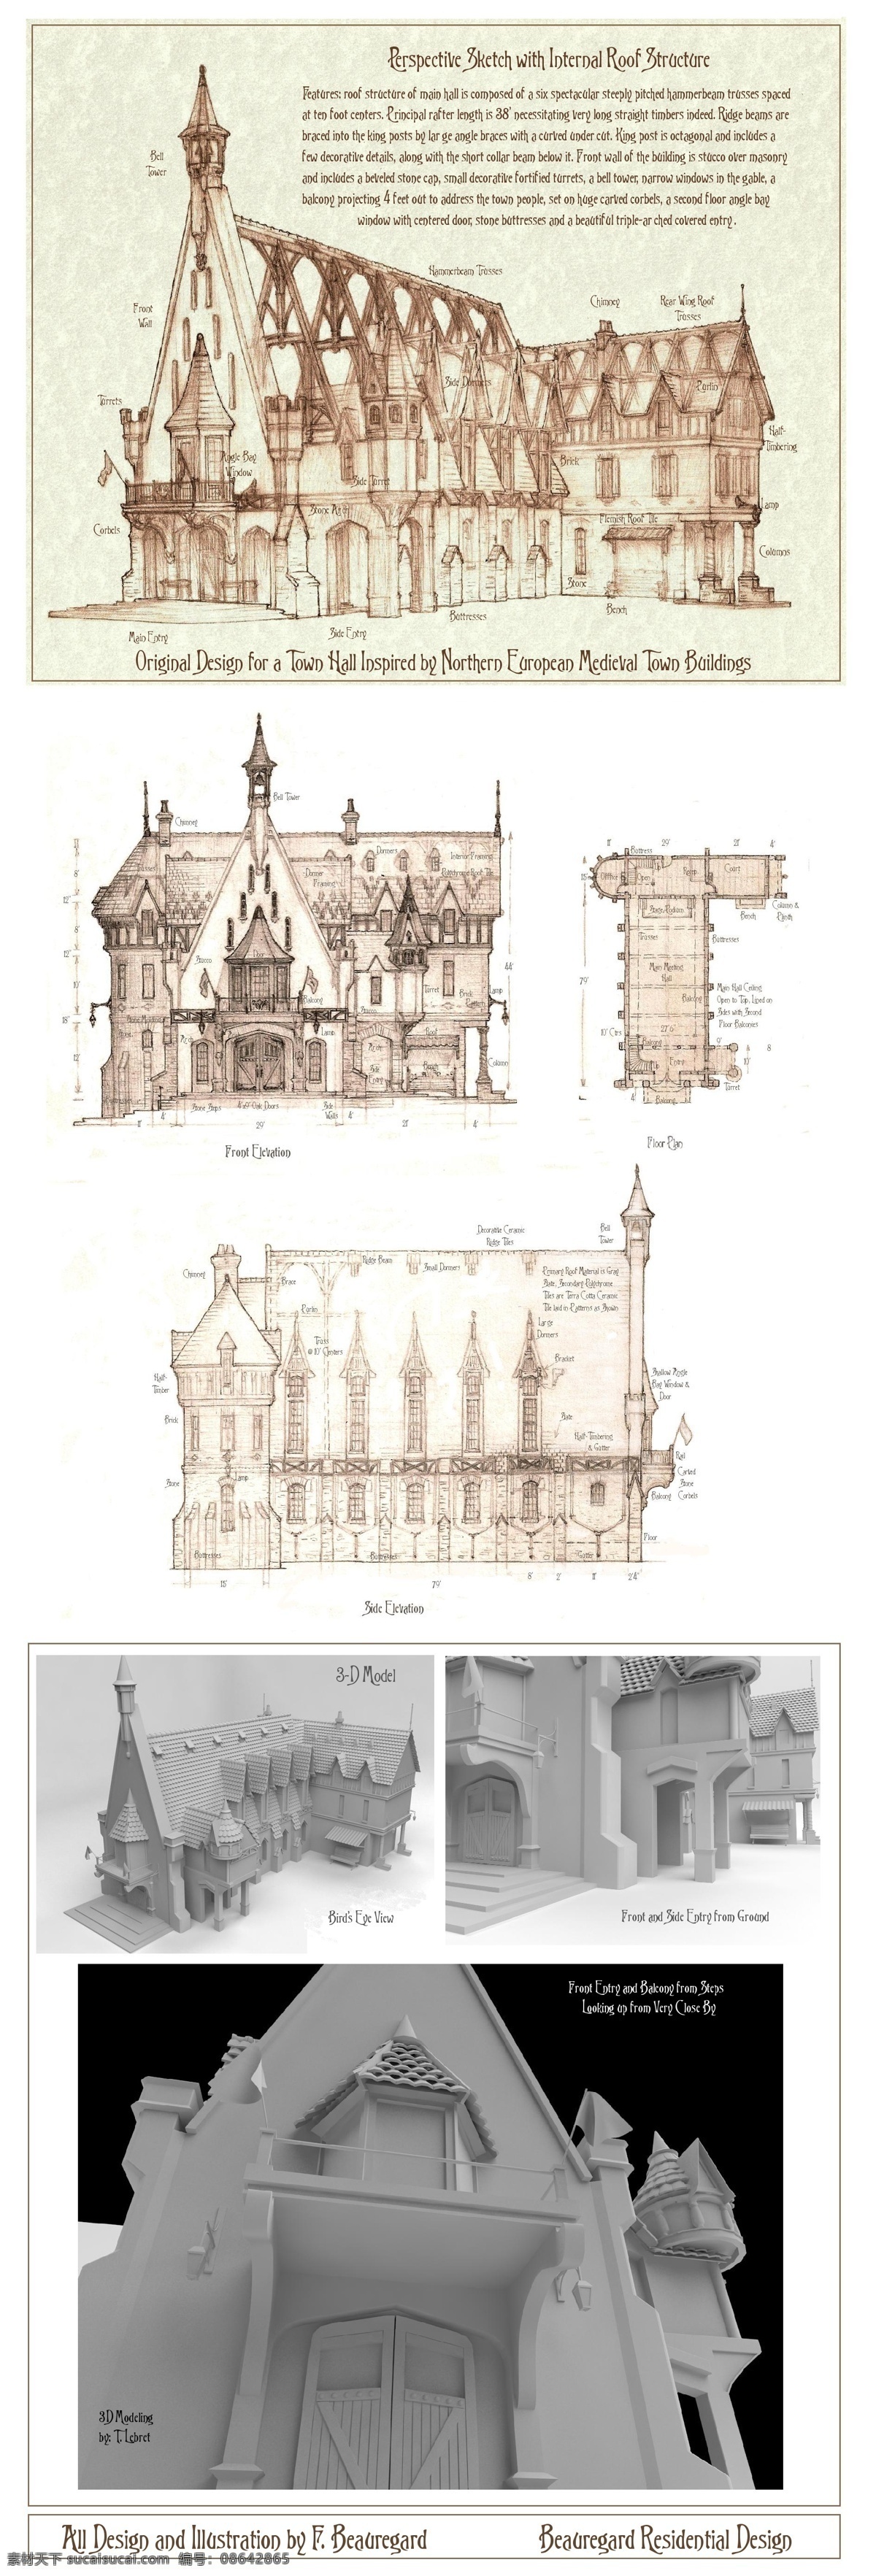 欧式 城堡 建筑 效果图 平面图 手绘图 图纸 建筑施工图 建筑平面图 施工图 欧式建筑 手绘效果图